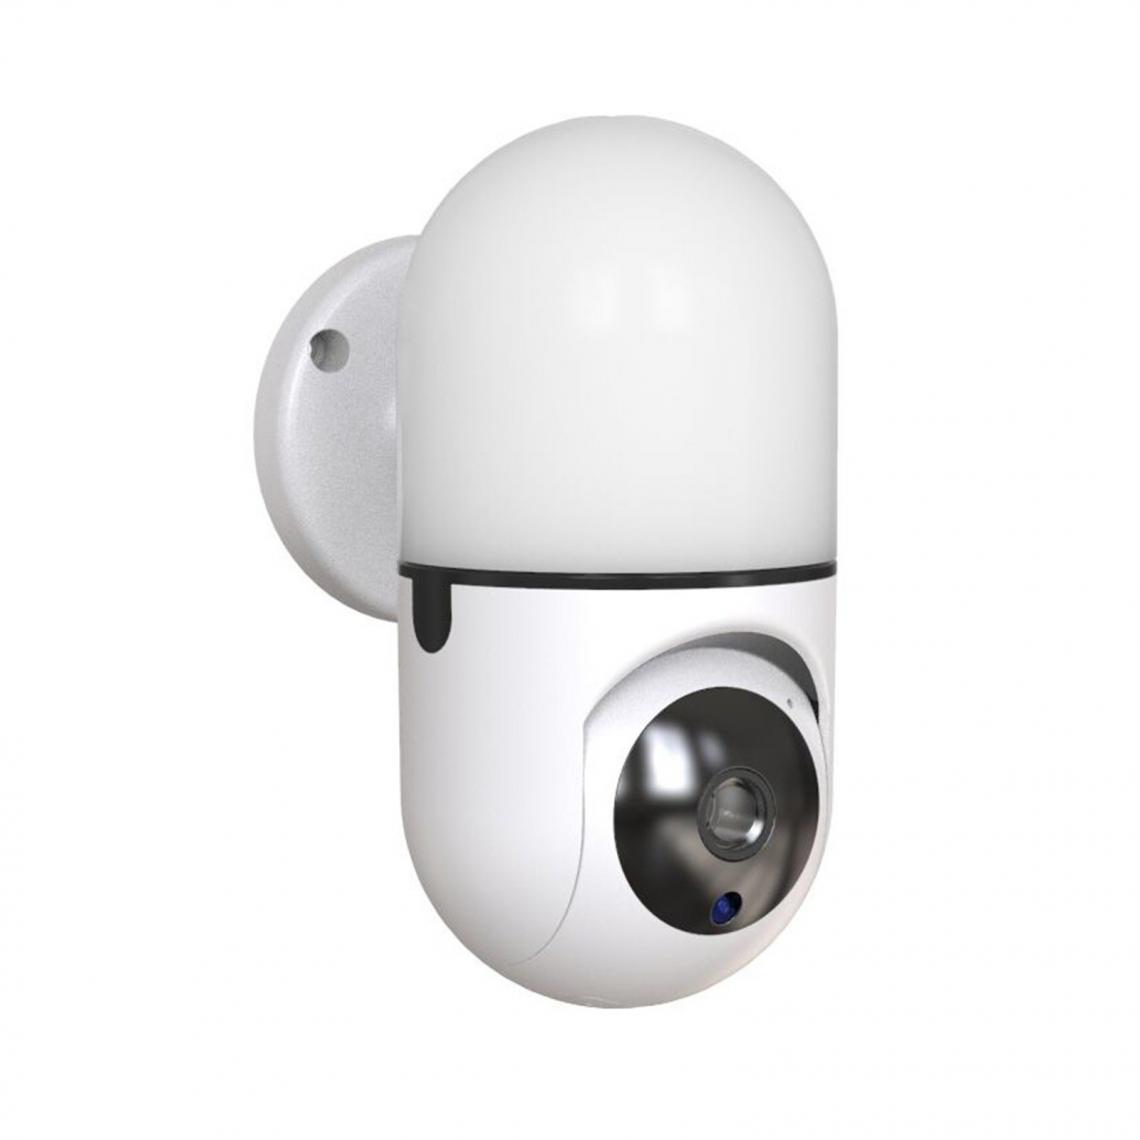 Justgreenbox - Caméra WIFI de sécurité à domicile, Blanc - Accessoires sécurité connectée